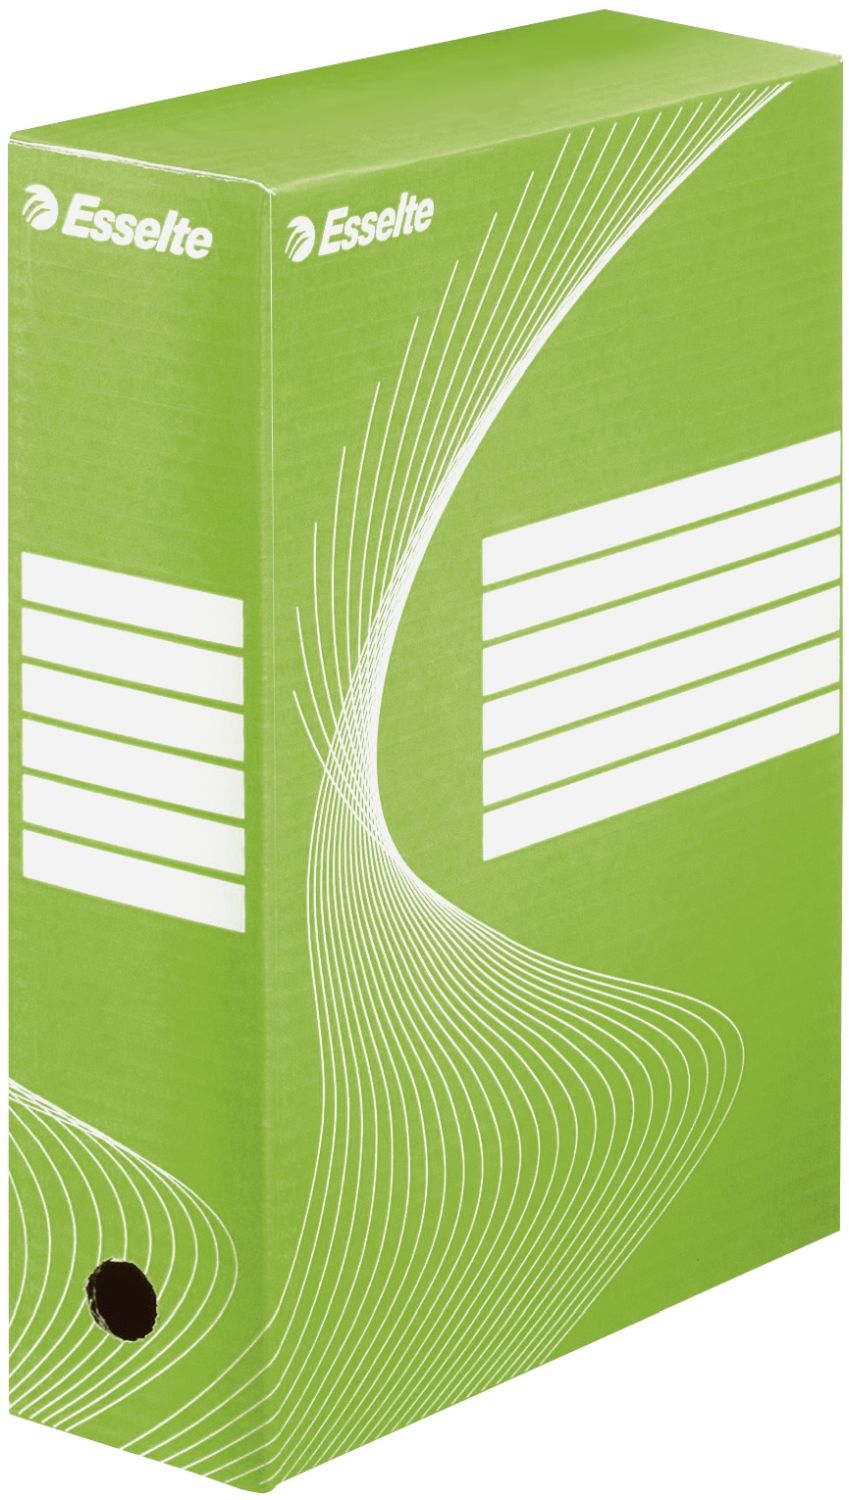 Archivschachtel Esselte 128424, DIN A4, Rückenbreite 100 mm, 100% recycelte Pappe, grün